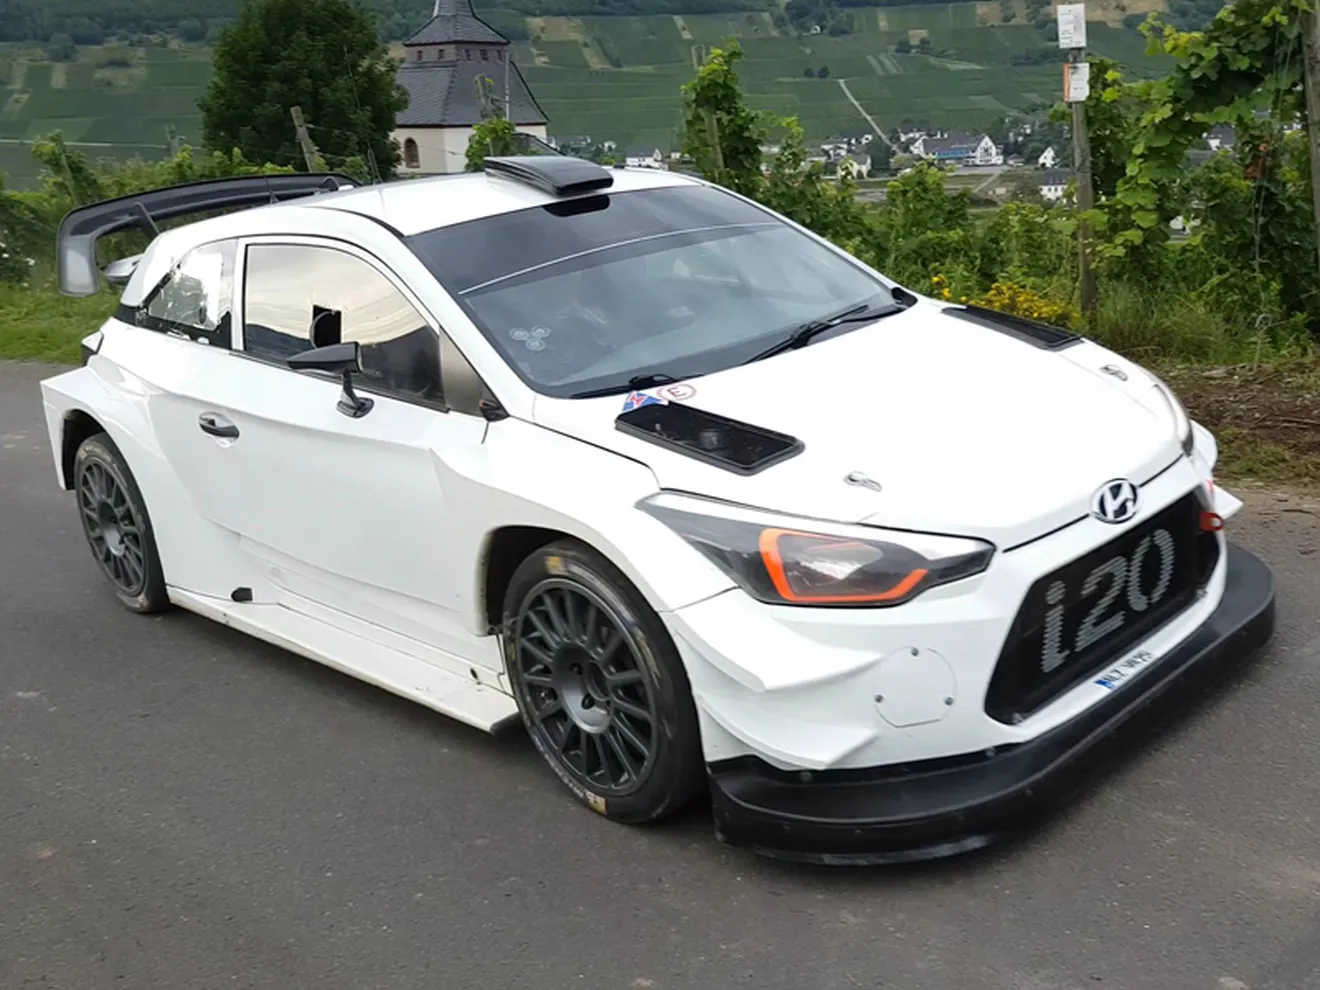 Hyundai prepara el Rally de Alemania con un nuevo test